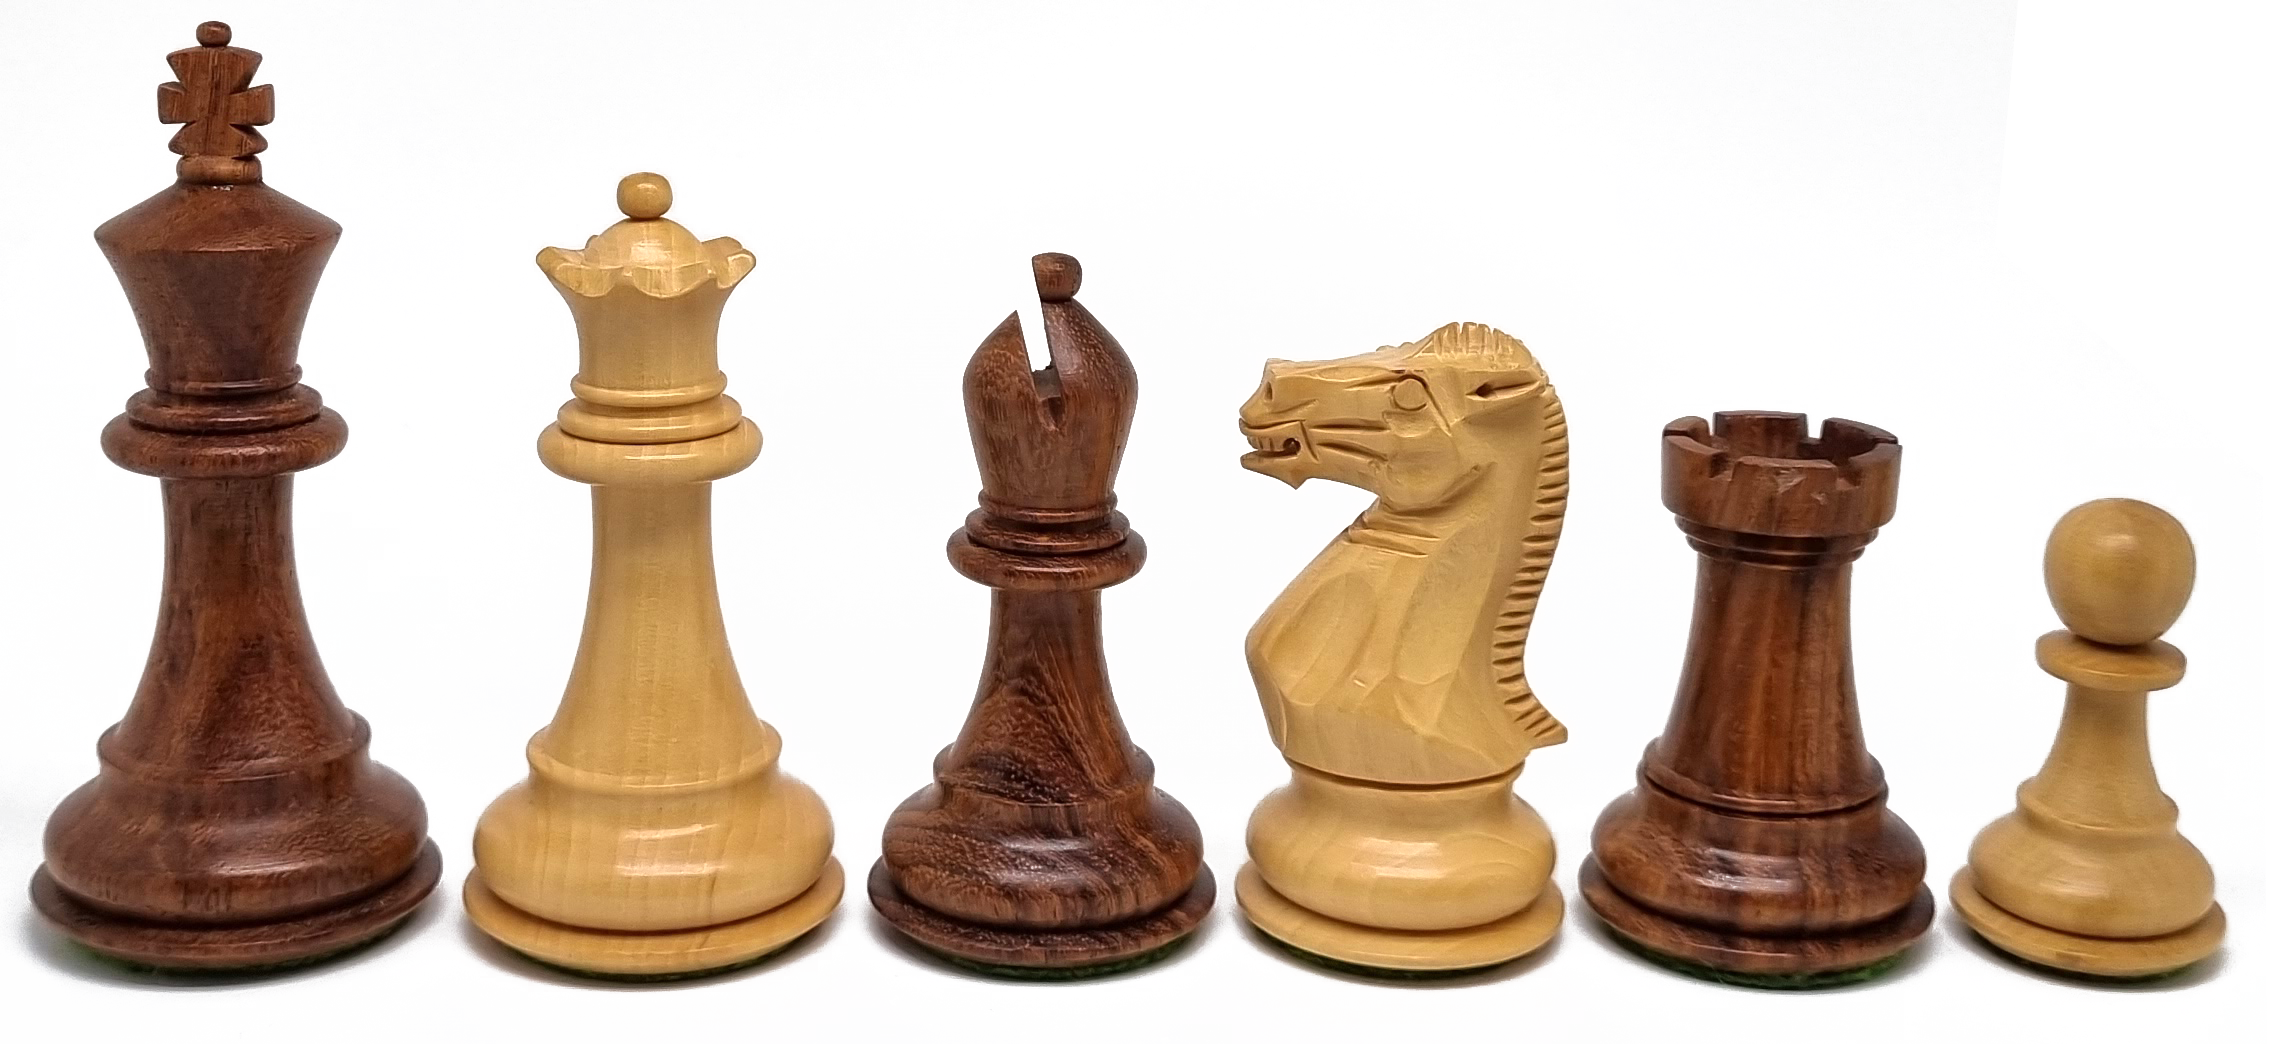 VI/ Piezas de ajedrez modelo Stallion "3,50" Shisham. 5187